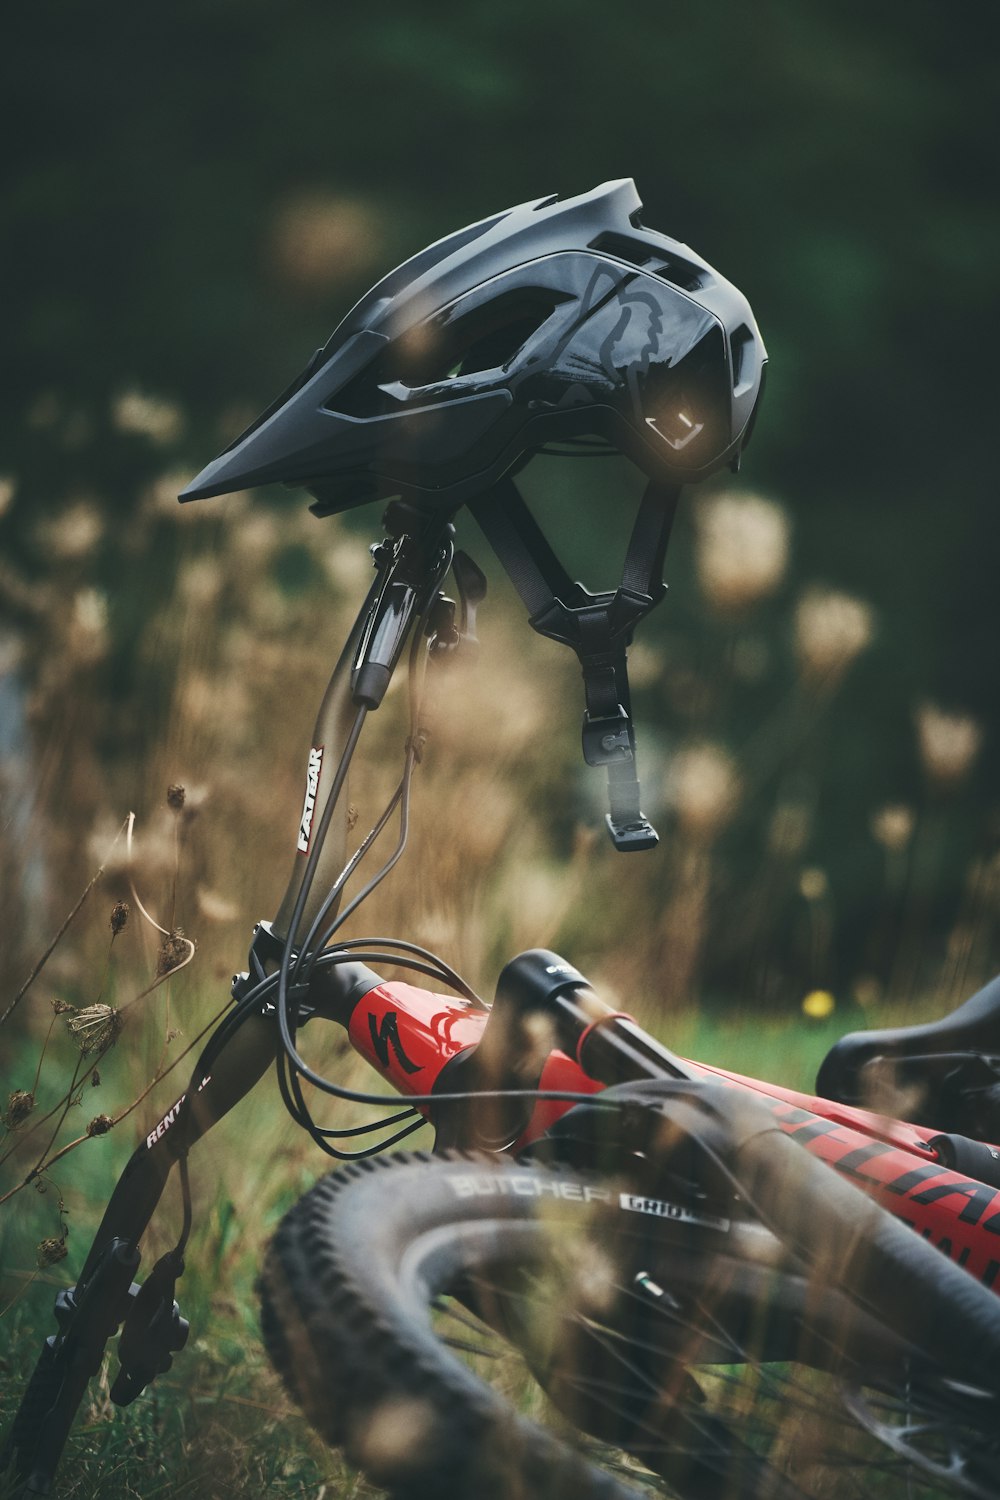 capacete de bicicleta preto e vermelho na grama marrom durante o dia